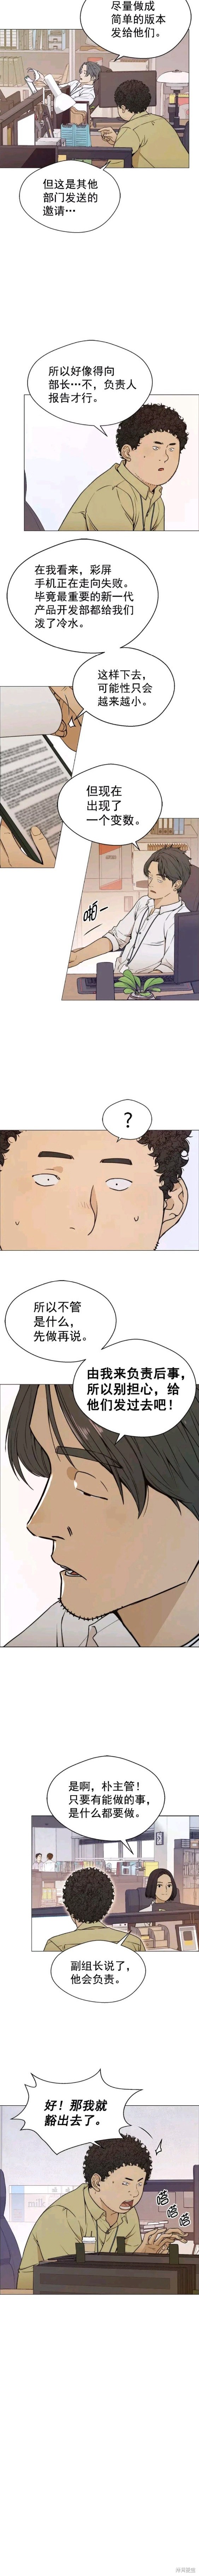 男子汉漫画,第98话9图